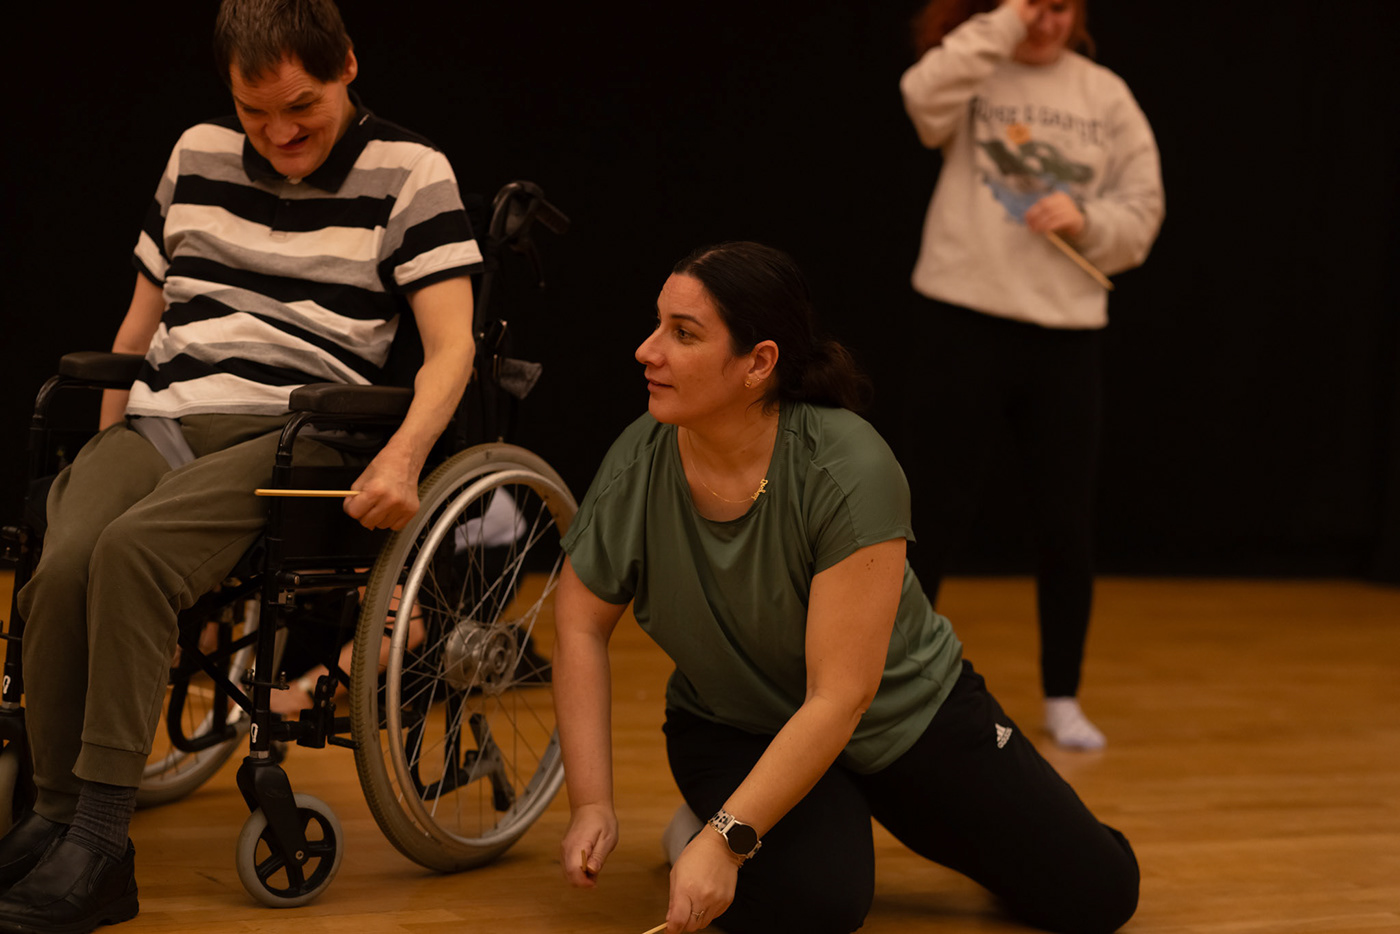 AMICI Dance Theatre Shane Aurousseau Photography  portrait autism cerebral palsy downsyndrome motorneuronedisease blindness Deafness